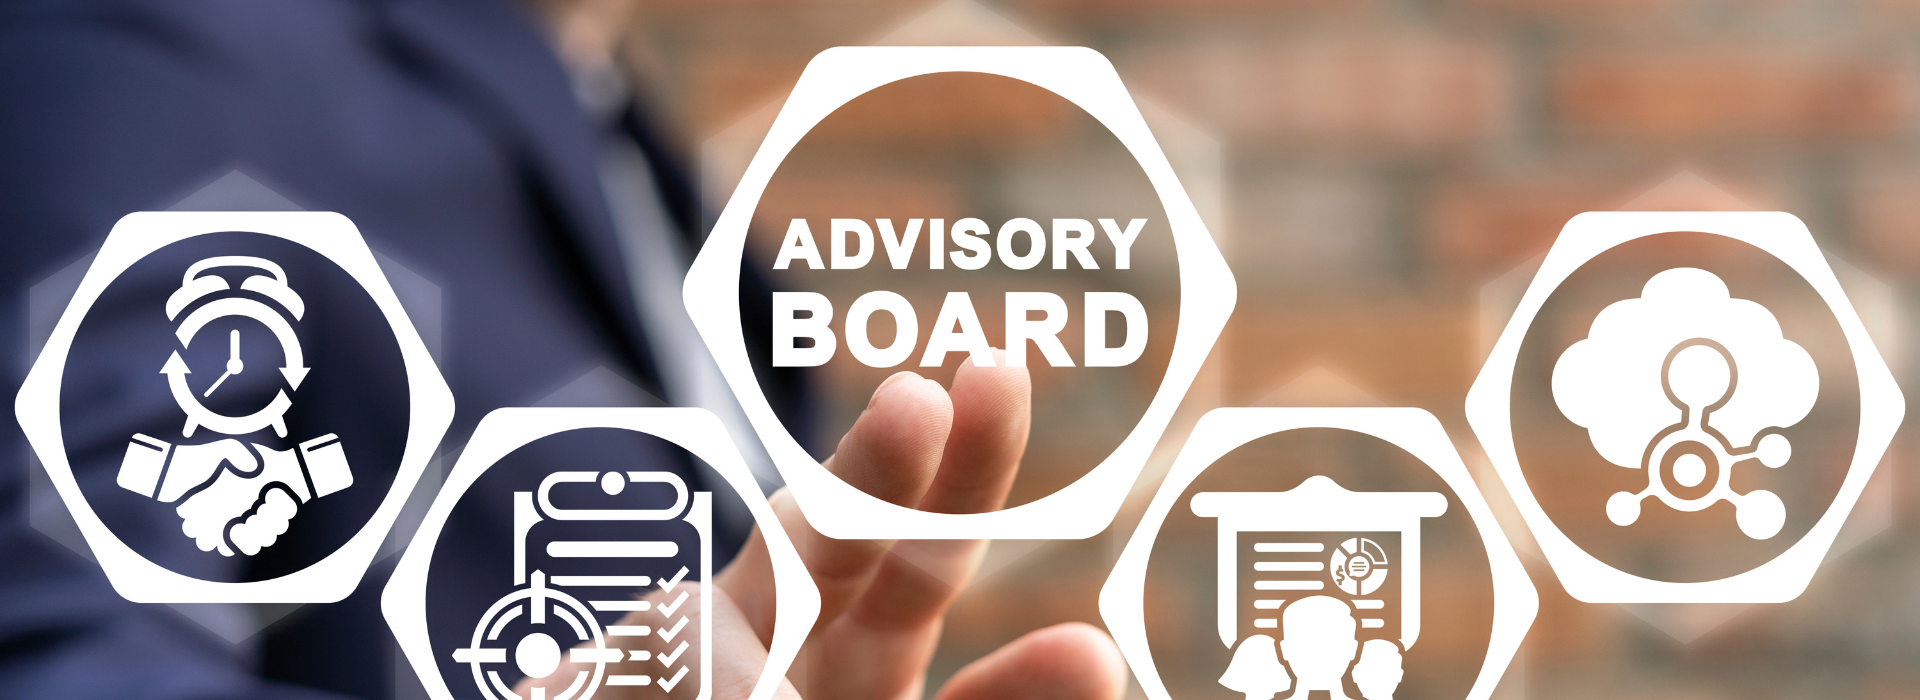 Advisory Boards